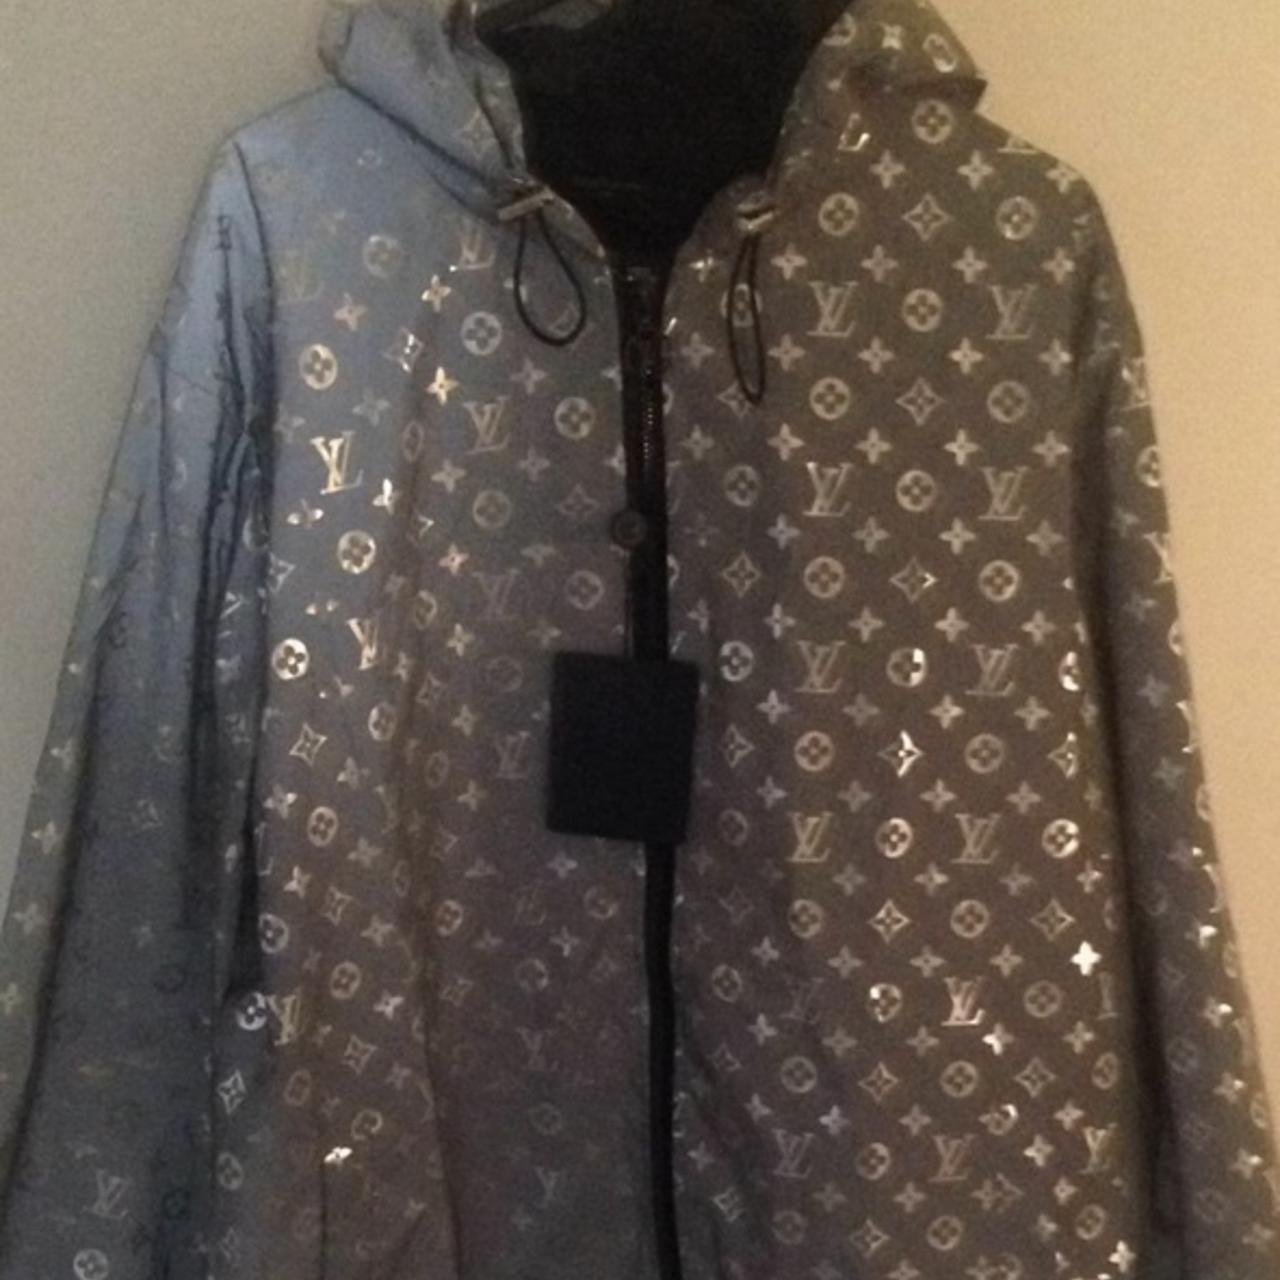 LV reflective jacket size L £150 - Depop